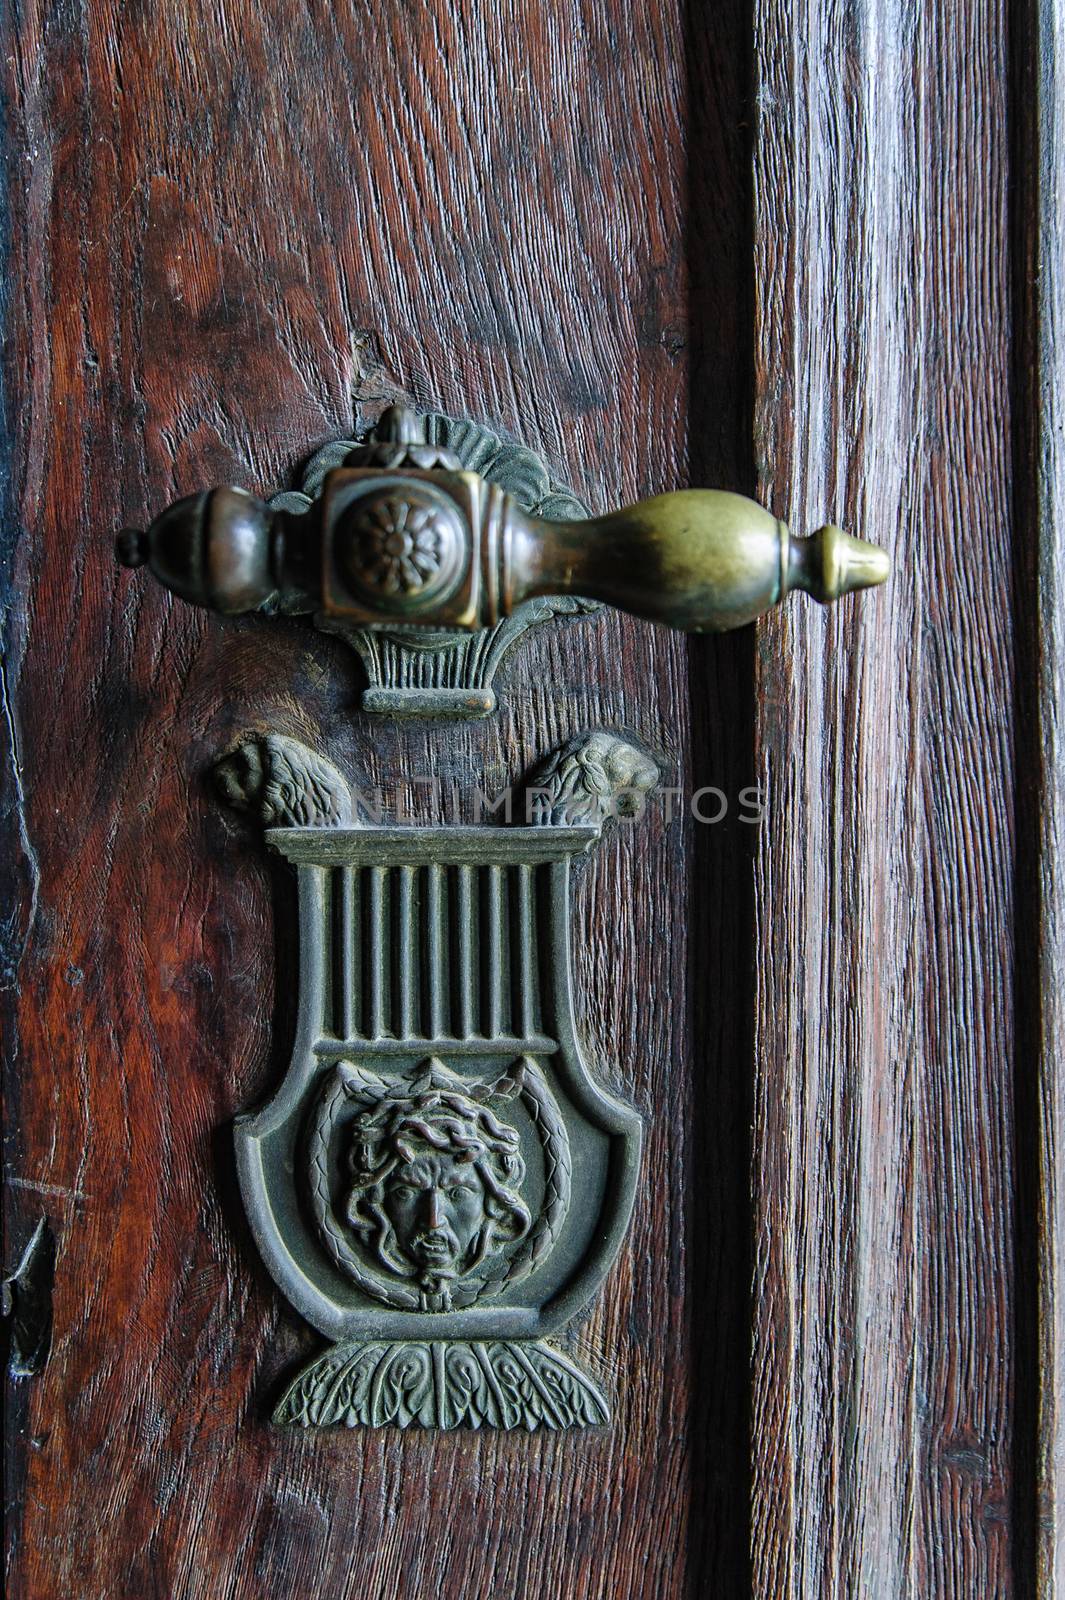 Vintage doorknob on a wooden antique door